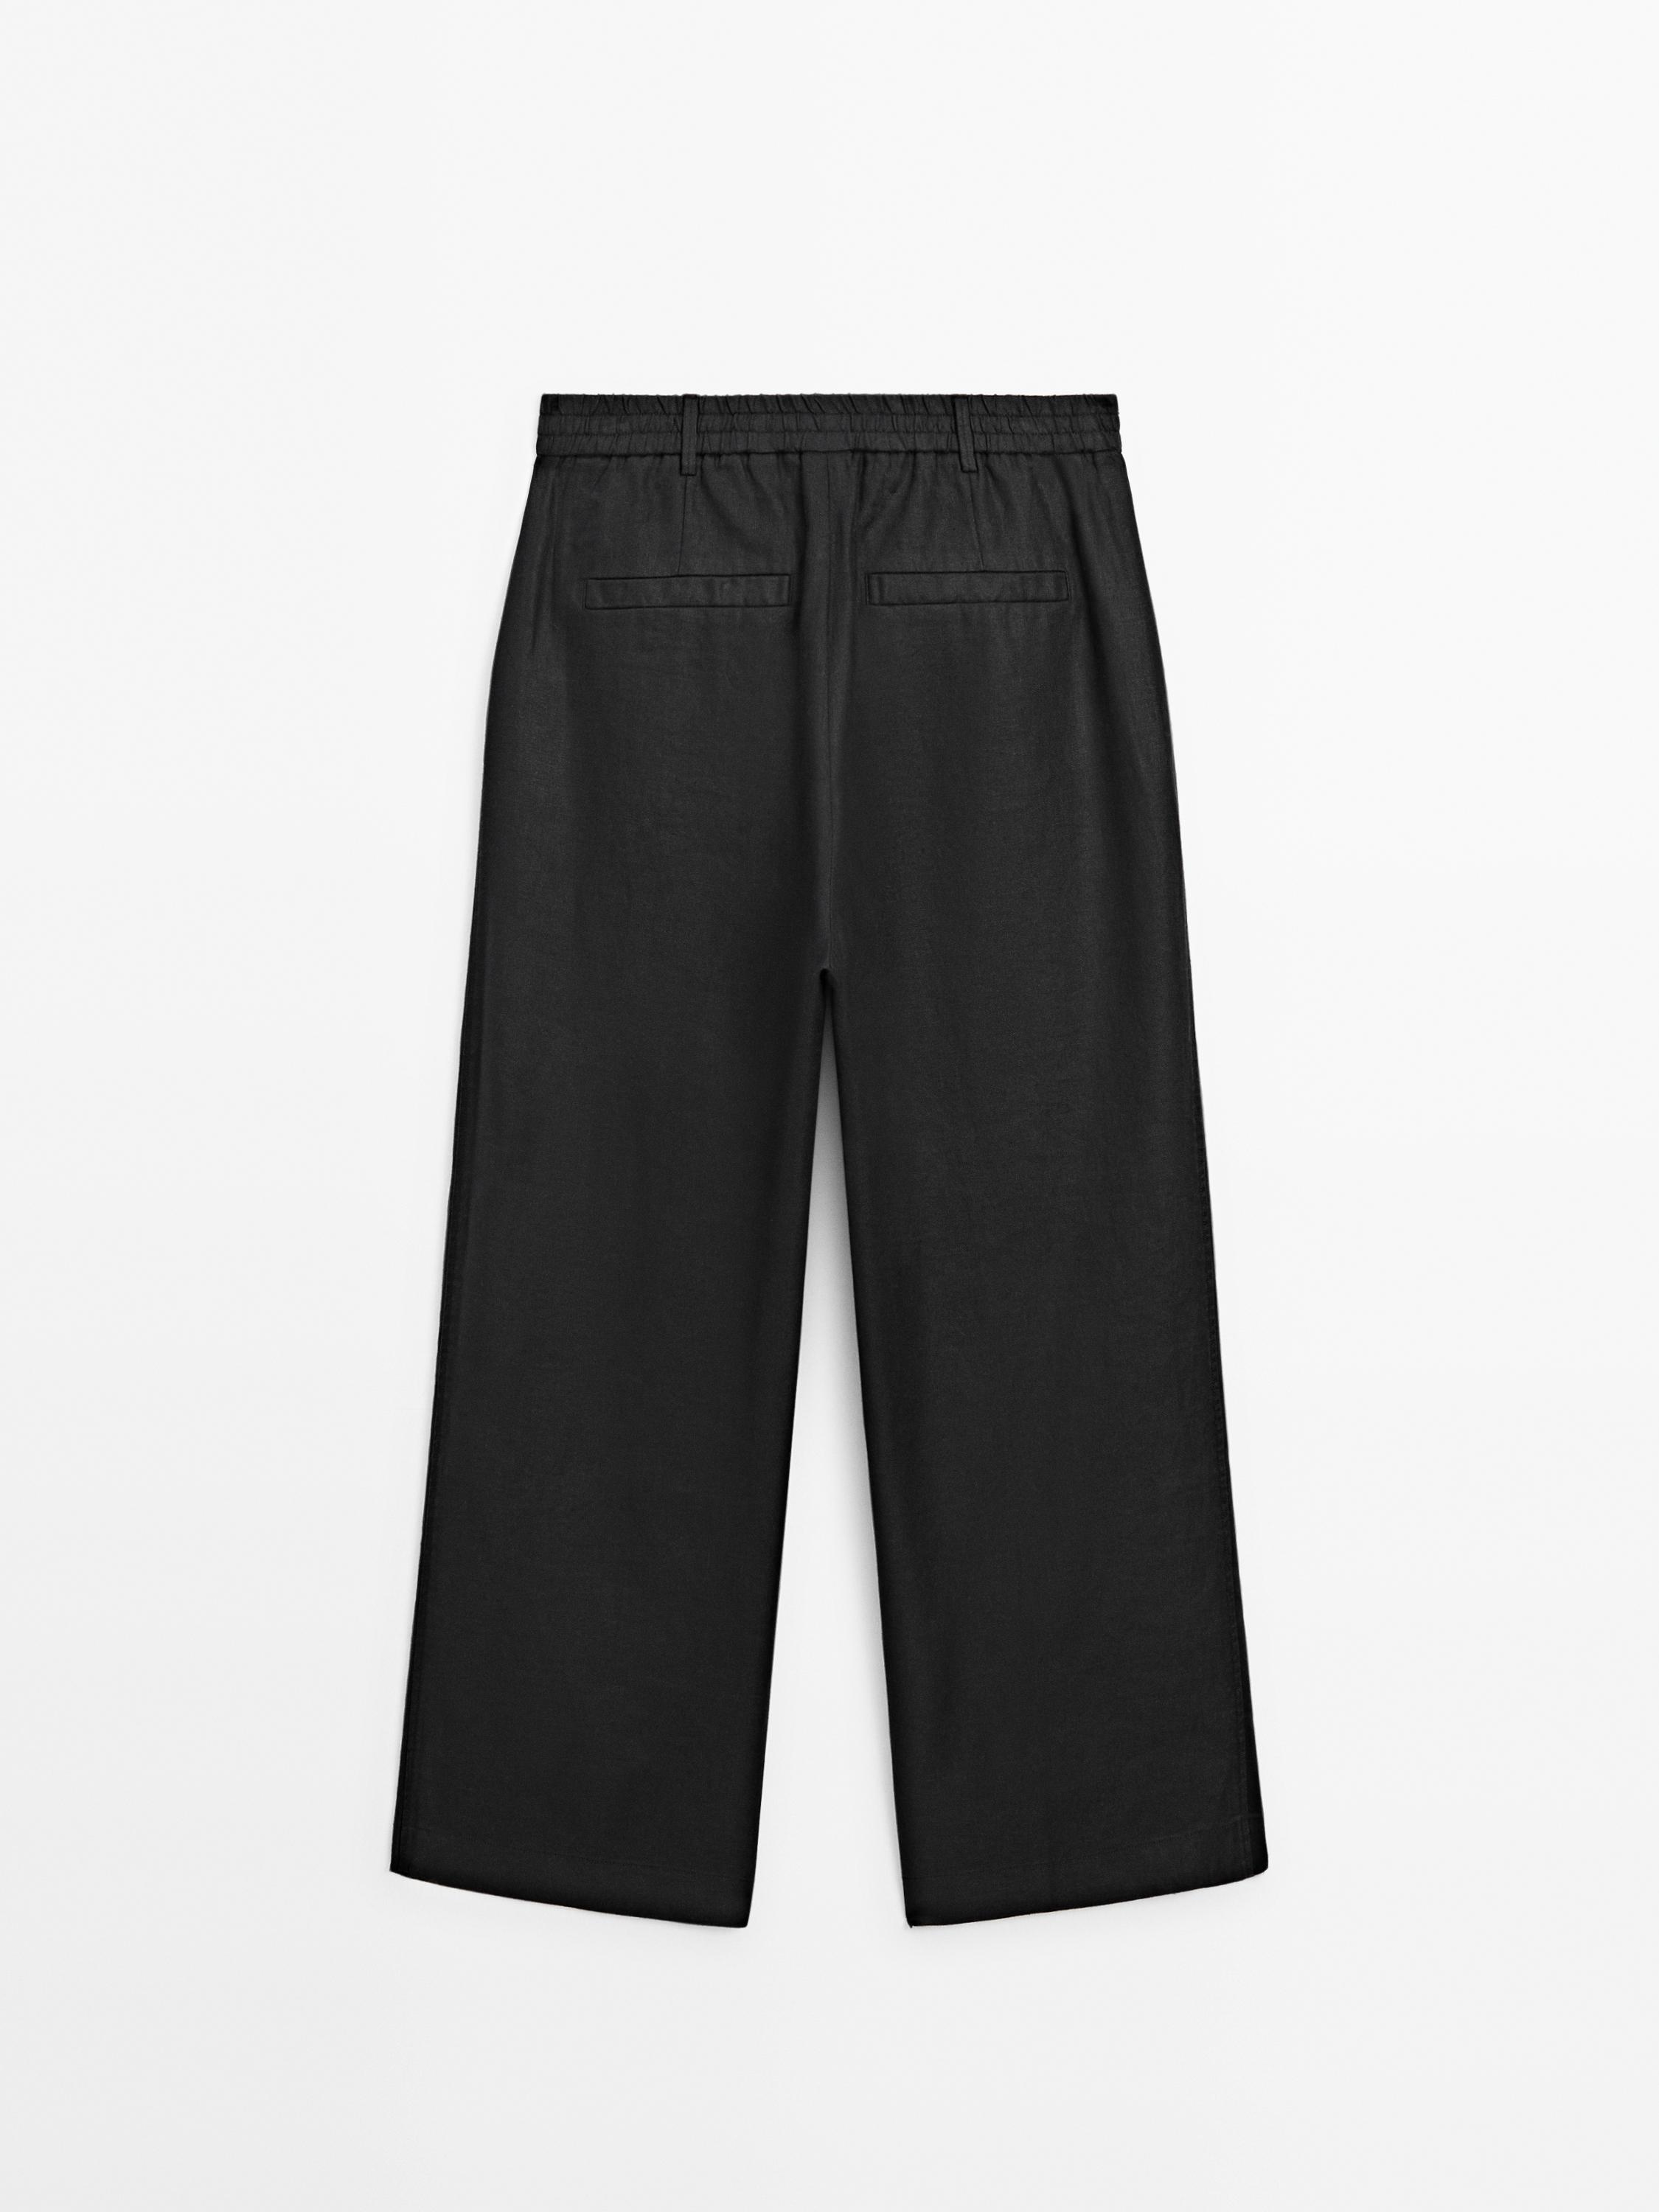 Black Leanora Linen Trouser, WHISTLES